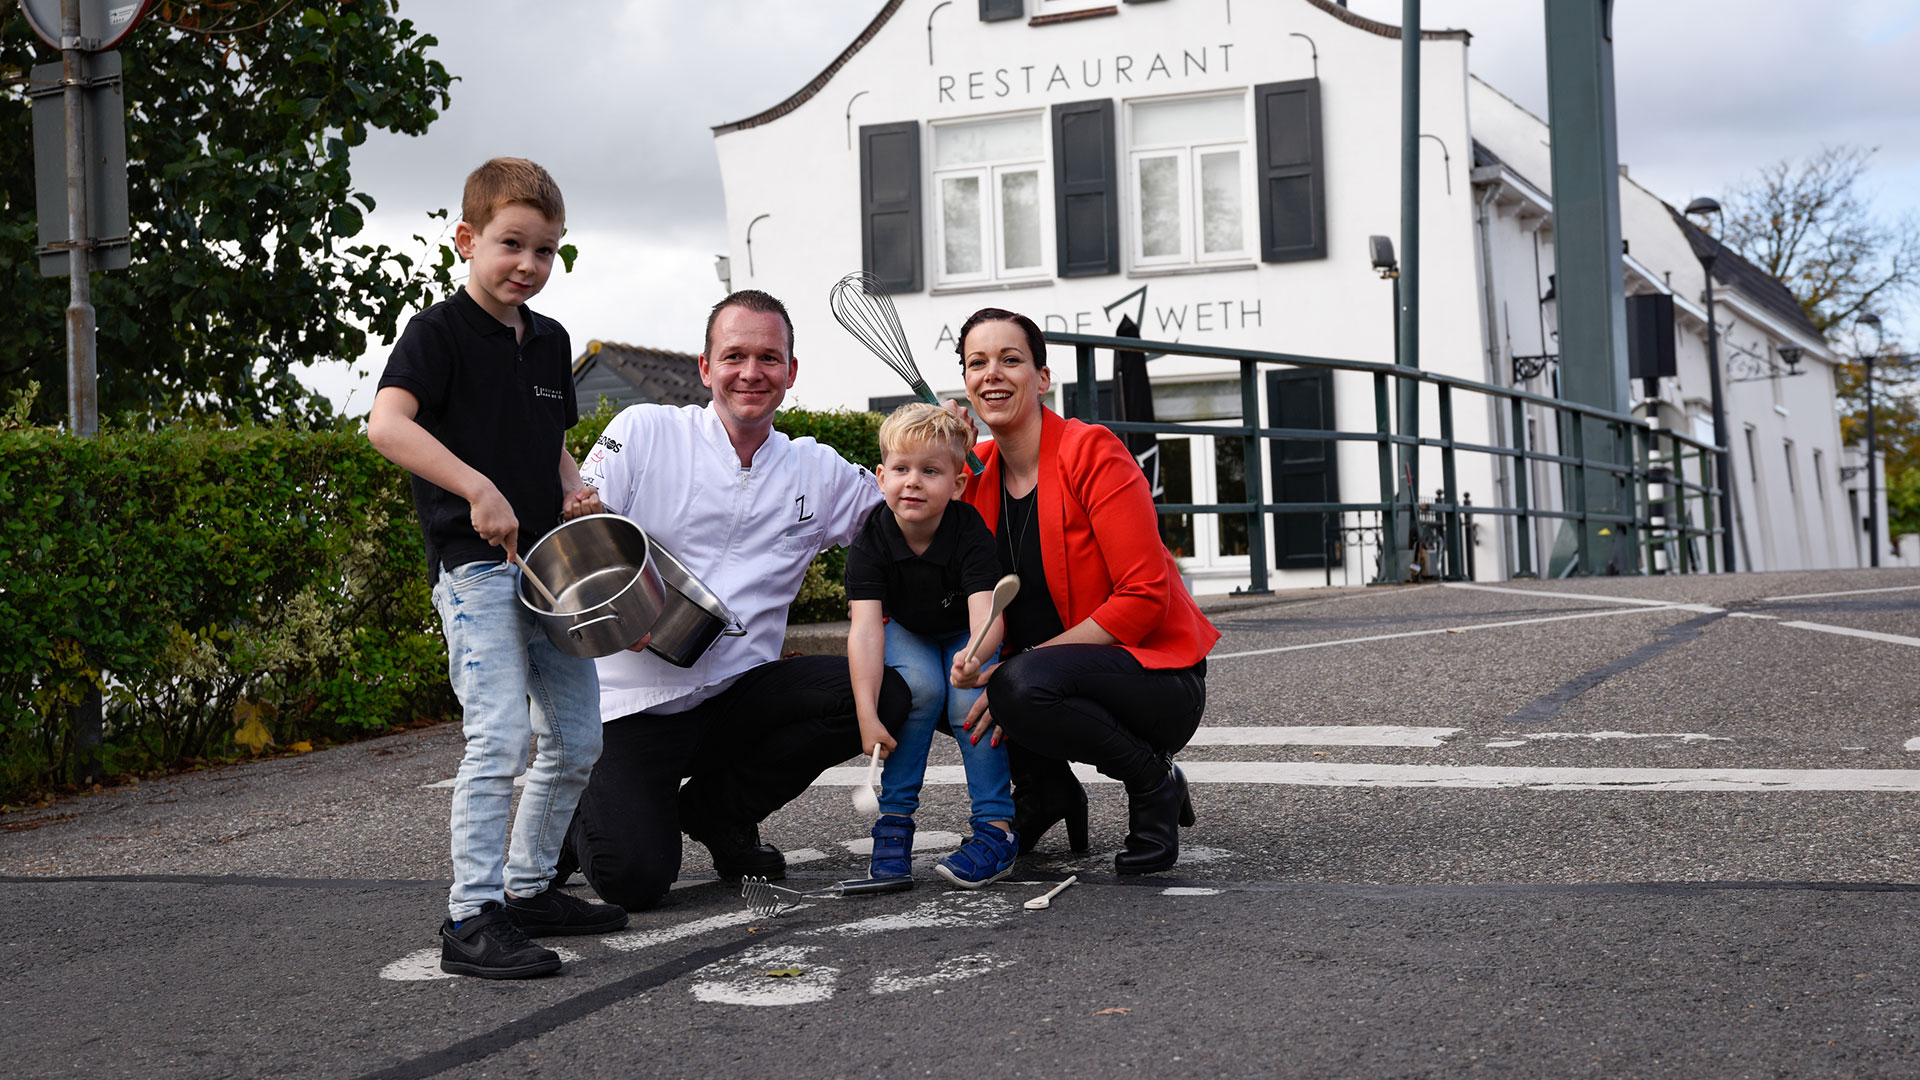 Chefkok Joris Peters met gezin voor het pand van sterrenrestaurant Aan de Zweth in Midden-Delfland